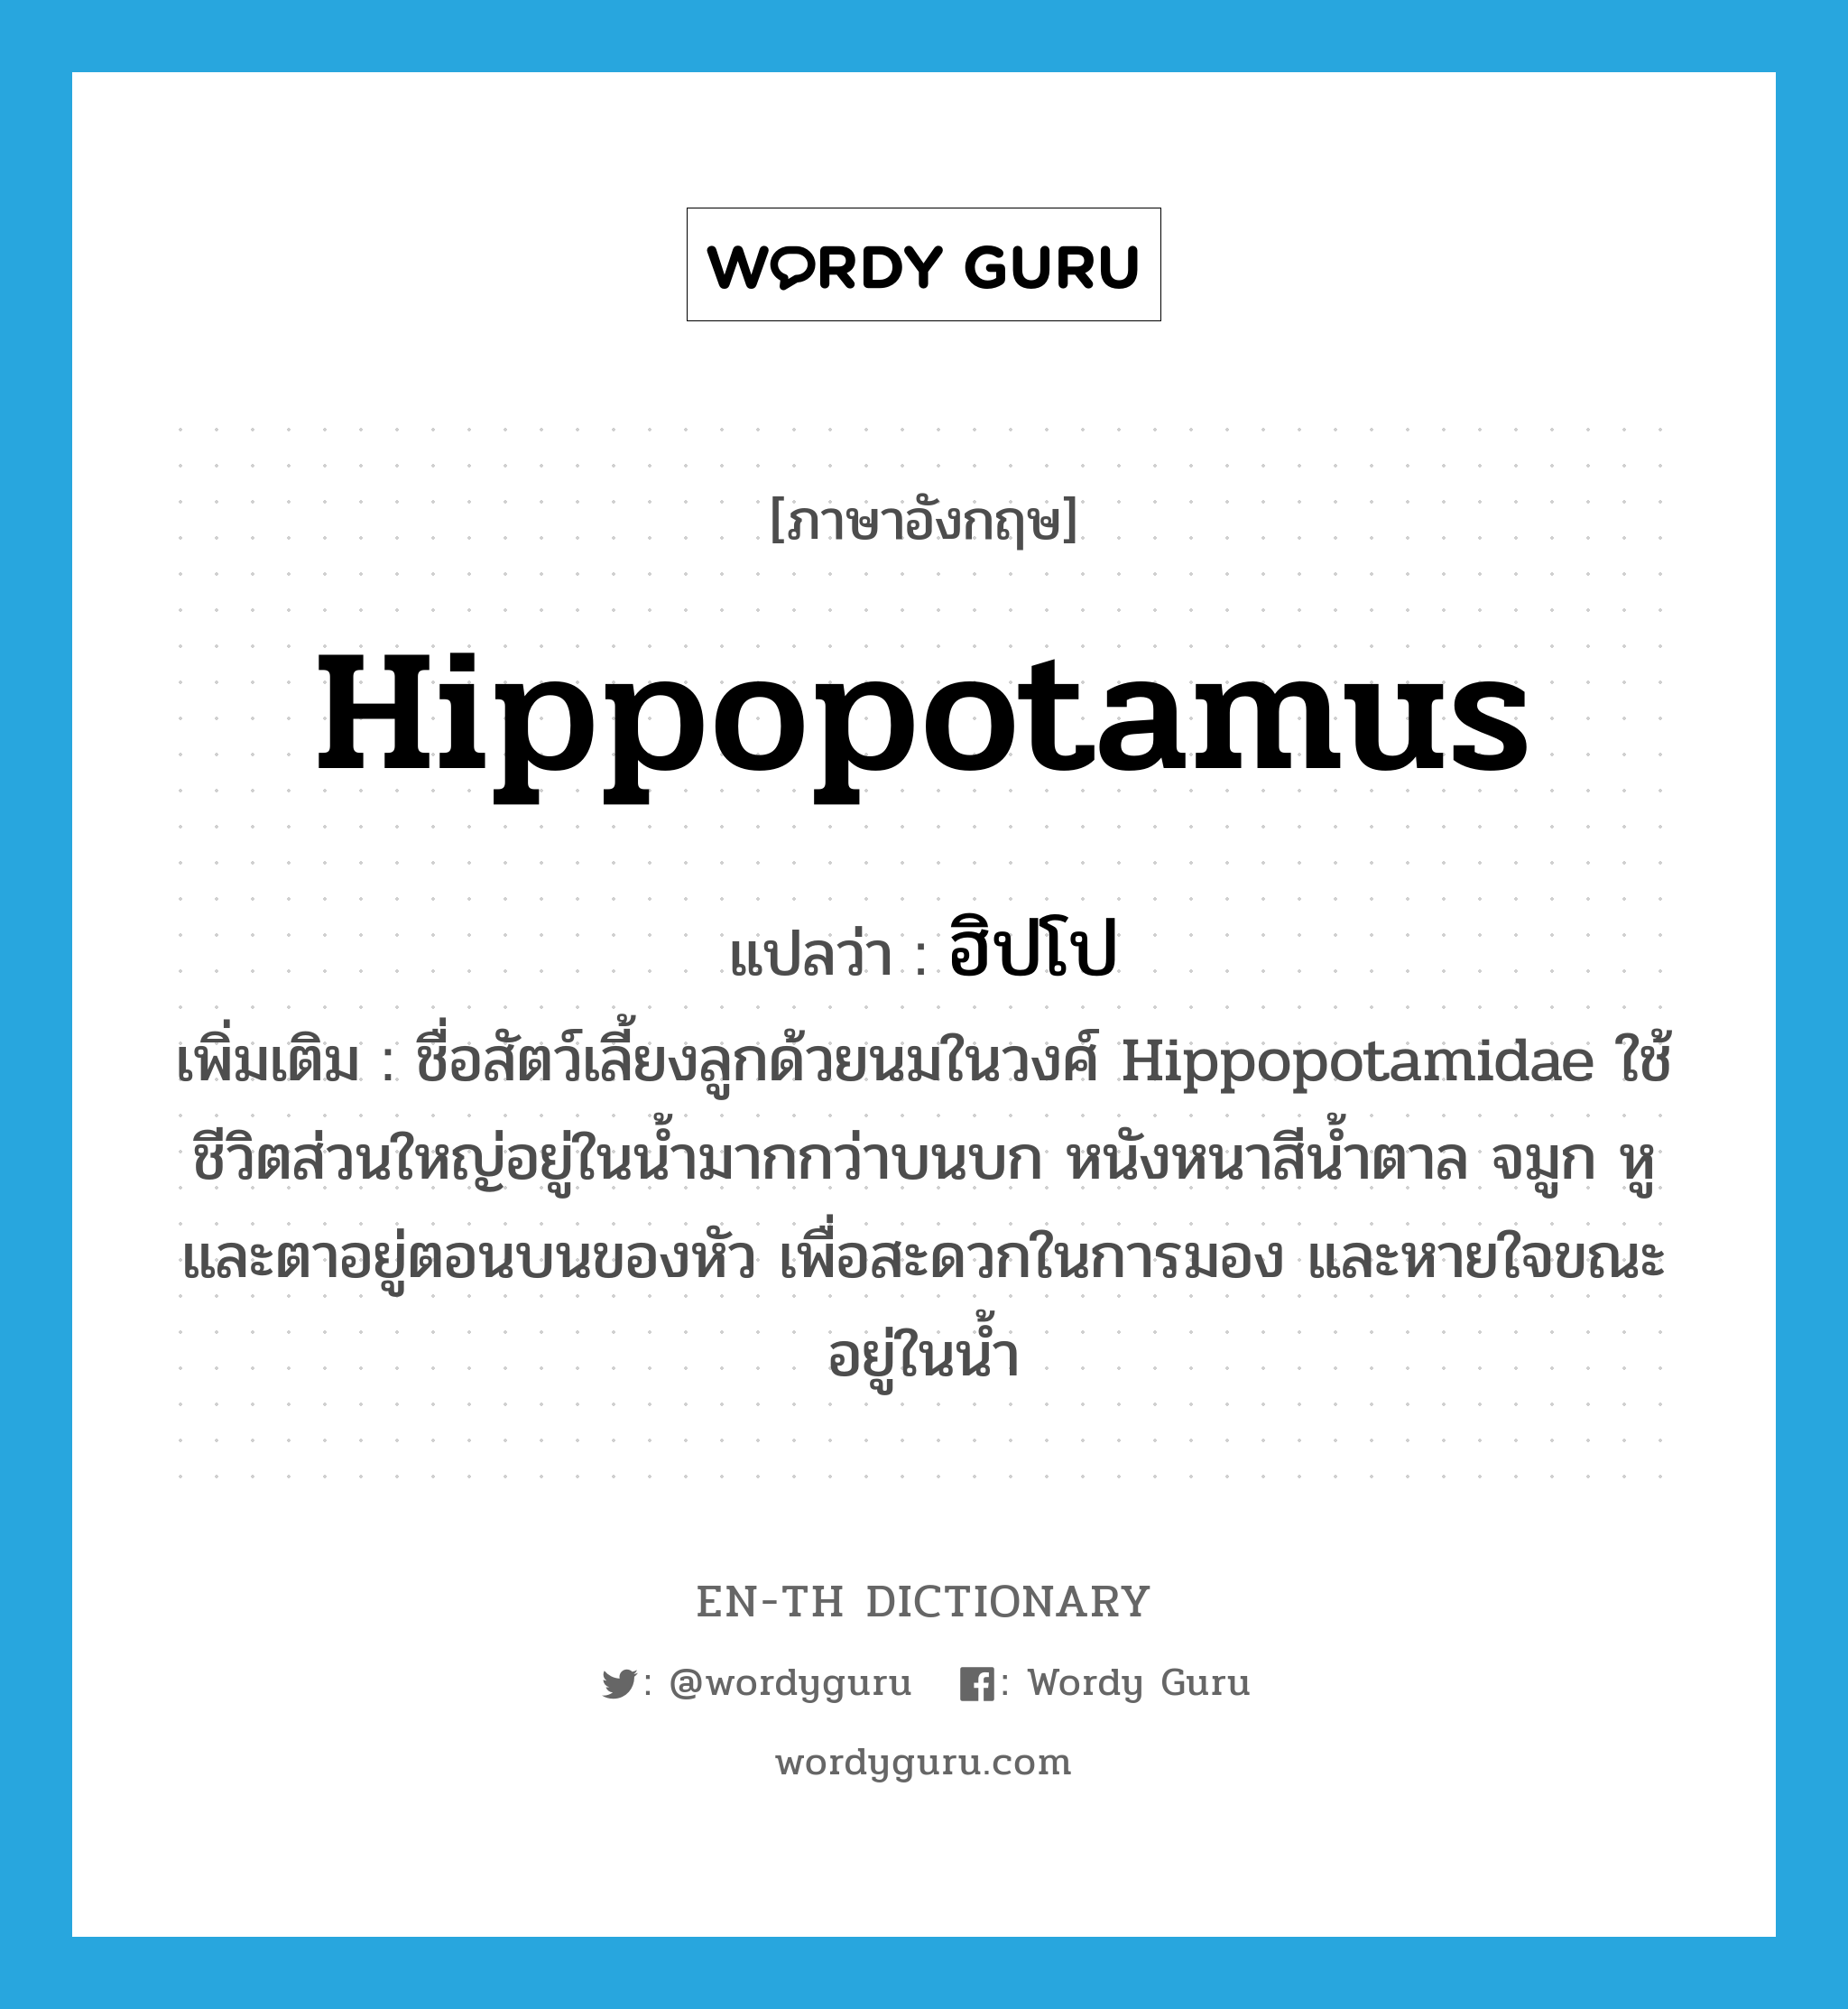 ฮิปโป ภาษาอังกฤษ?, คำศัพท์ภาษาอังกฤษ ฮิปโป แปลว่า hippopotamus ประเภท N เพิ่มเติม ชื่อสัตว์เลี้ยงลูกด้วยนมในวงศ์ Hippopotamidae ใช้ชีวิตส่วนใหญ่อยู่ในน้ำมากกว่าบนบก หนังหนาสีน้ำตาล จมูก หู และตาอยู่ตอนบนของหัว เพื่อสะดวกในการมอง และหายใจขณะอยู่ในน้ำ หมวด N